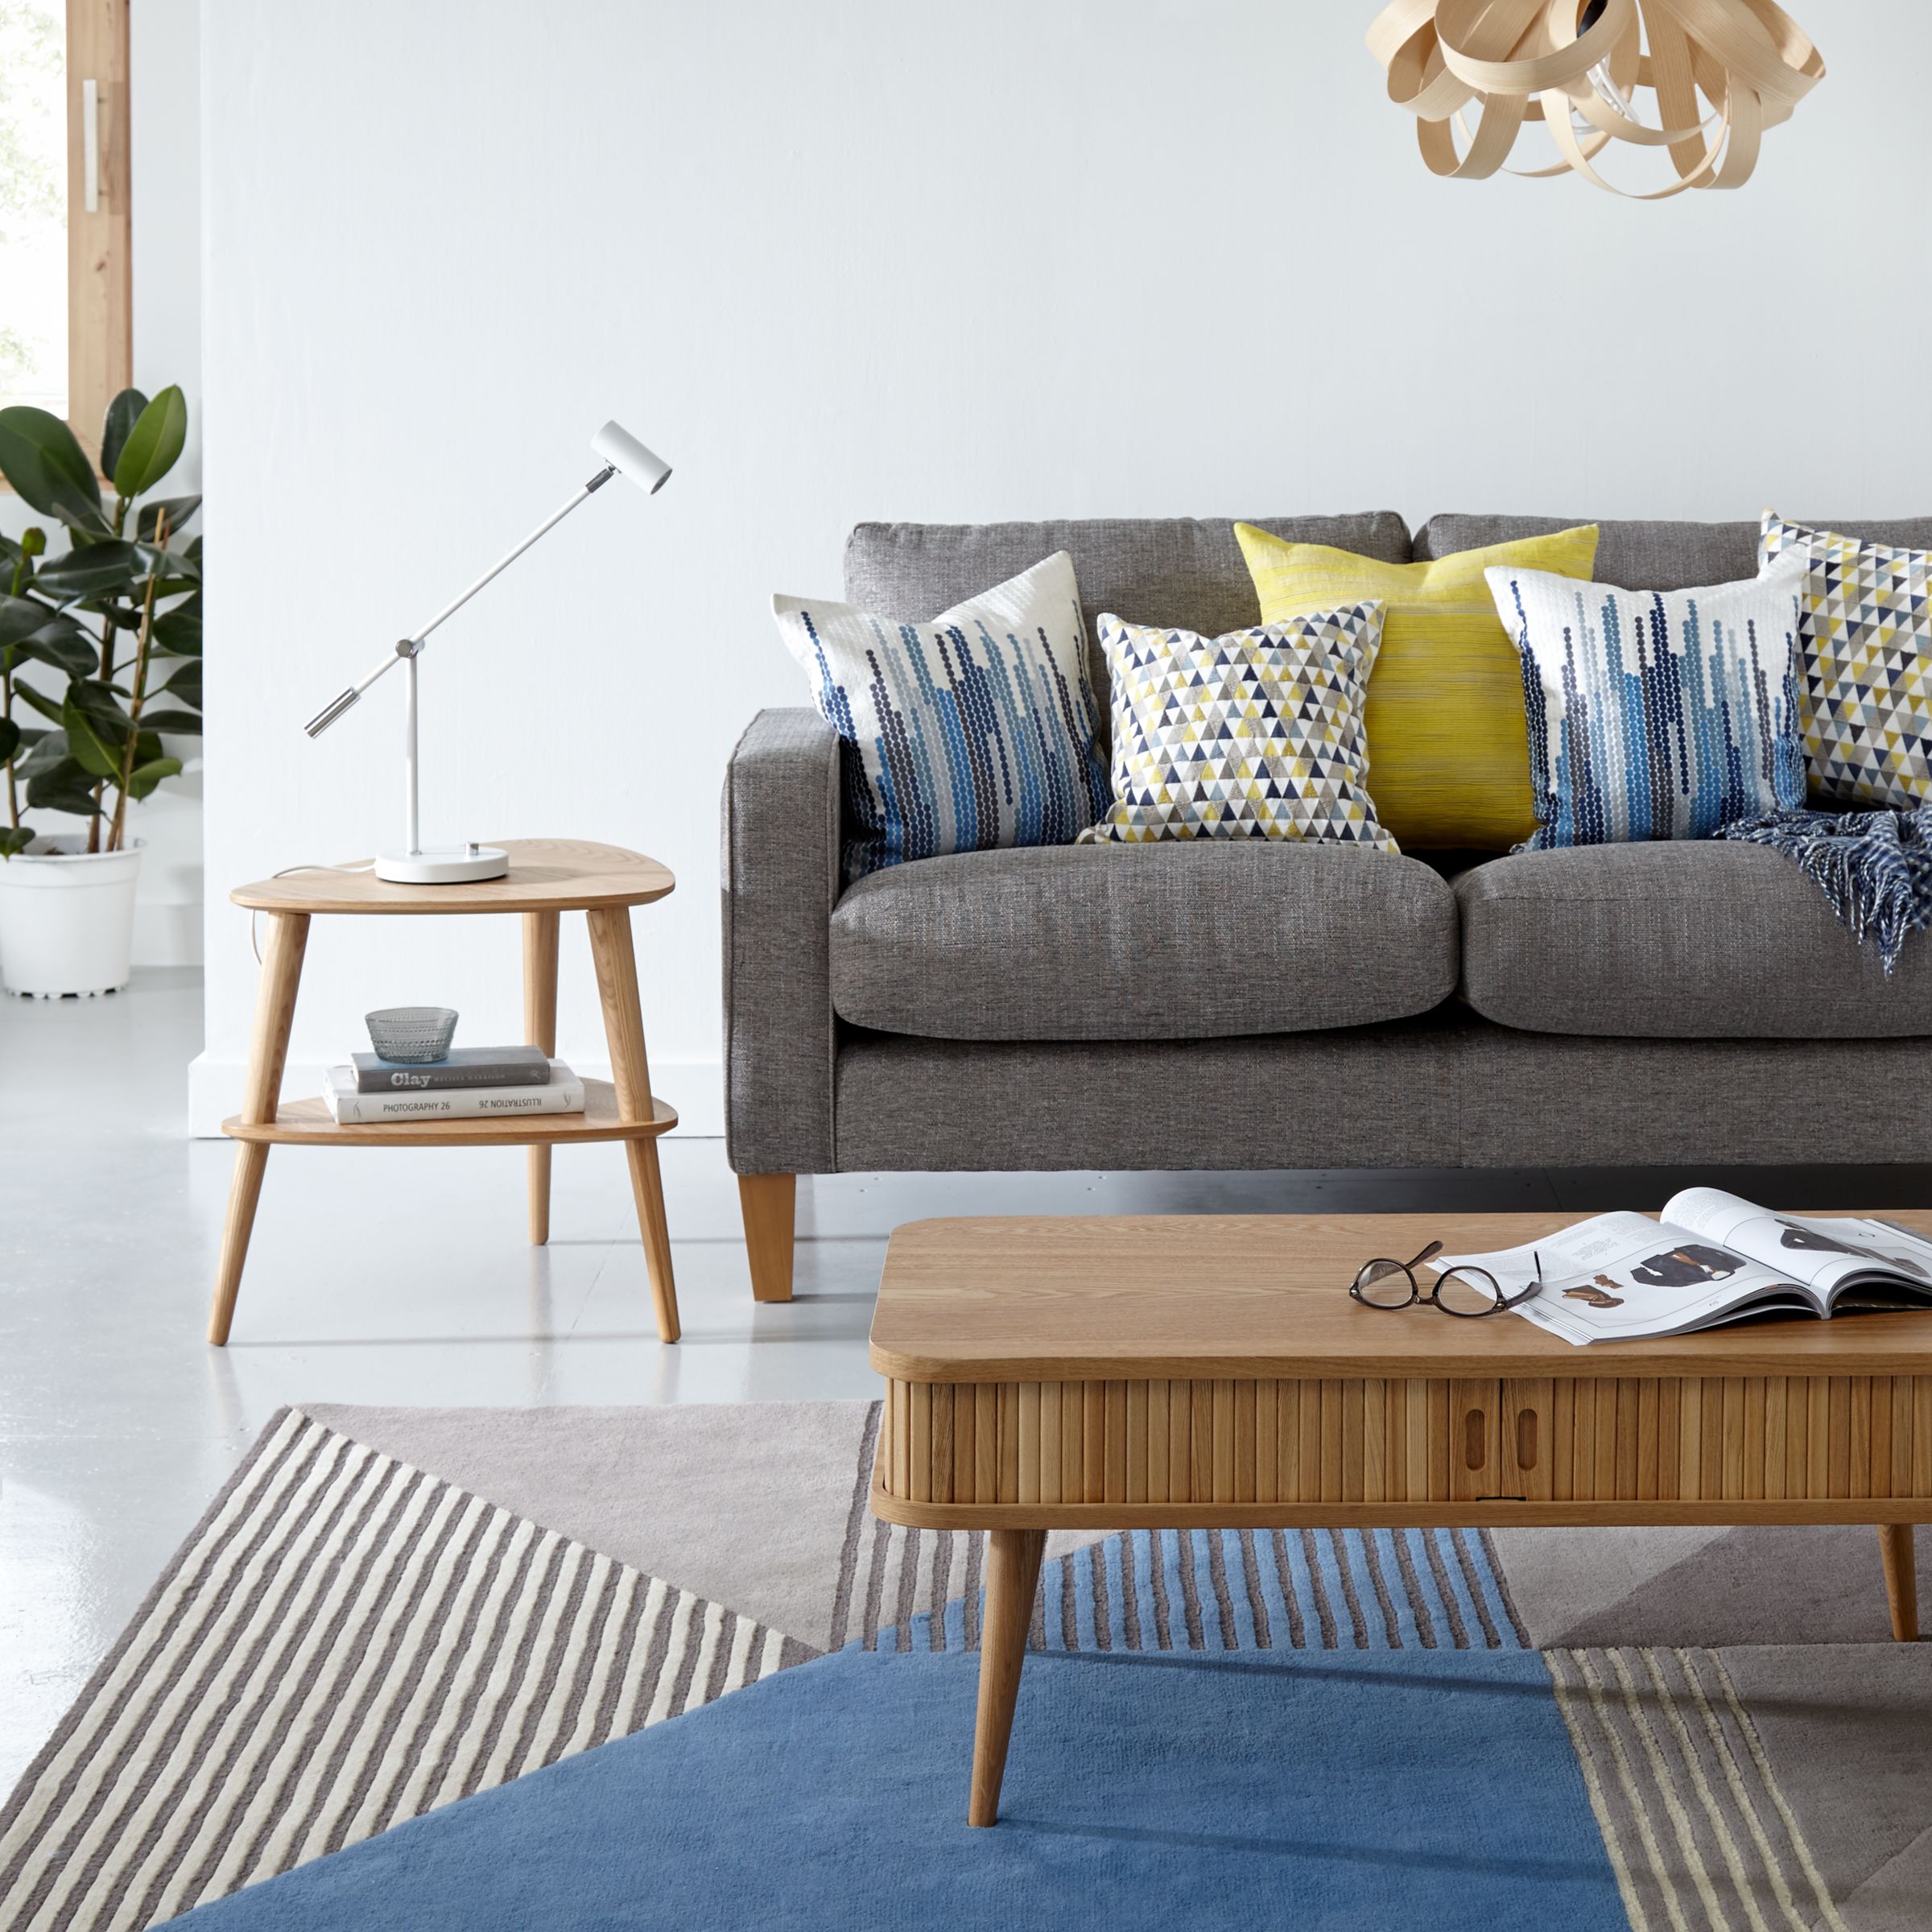 Buy John Lewis Grayson Living Room Furniture Range John Lewis